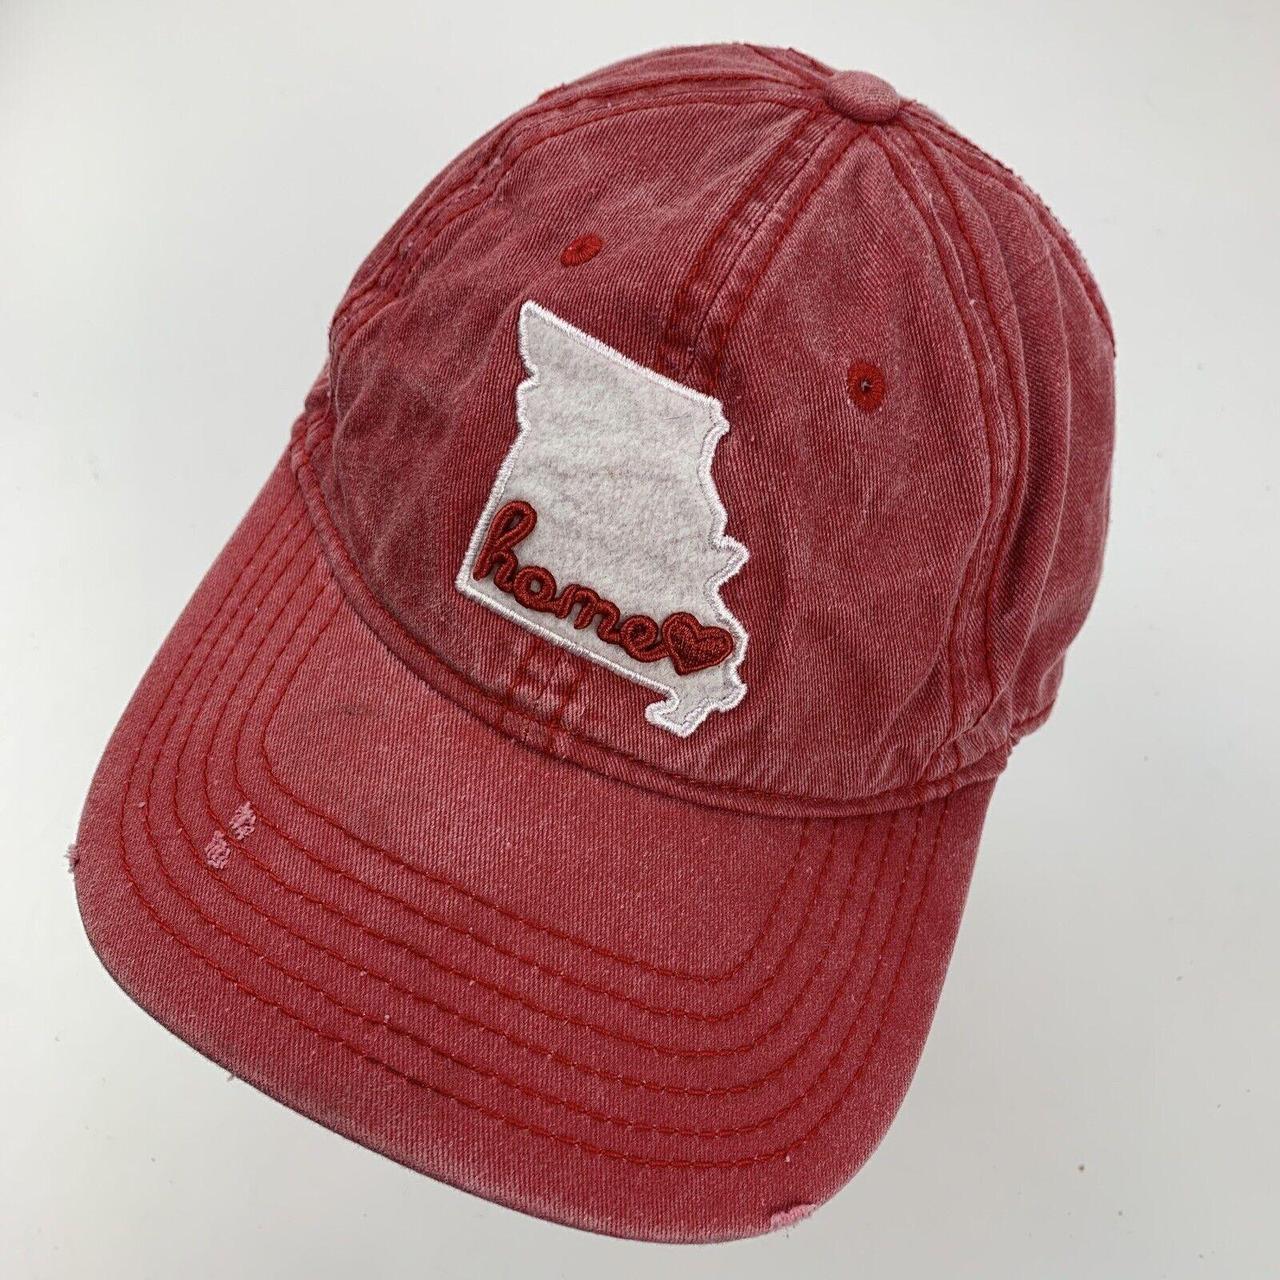 iHome Men's Red Hat